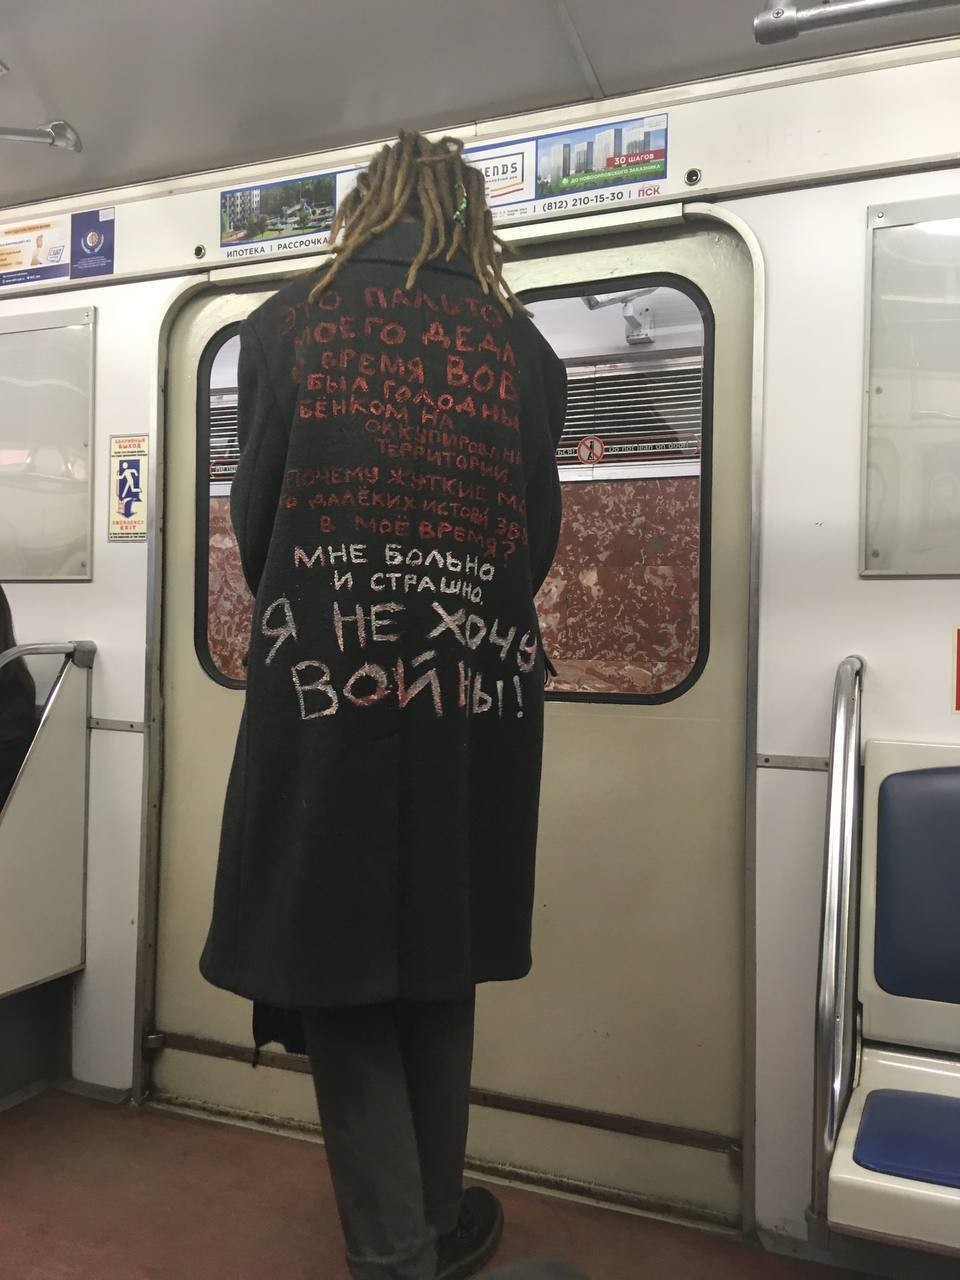 "Это пальто моего деда": в сети показали фото антивоенной акции в метро Санкт-Петербурга